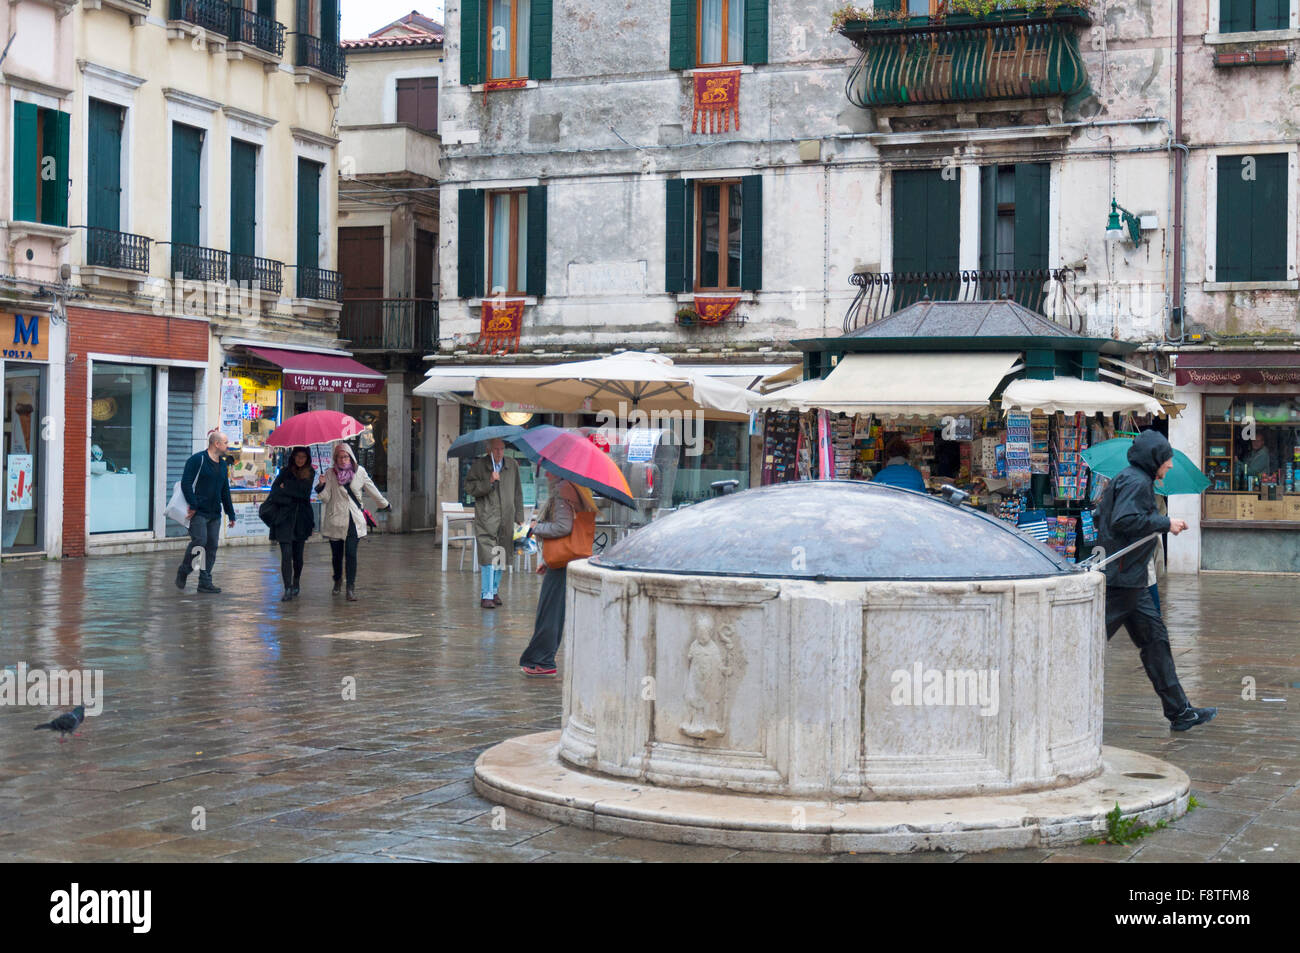 Campo San Barnaba, Venise, Italie. Un puits sur un jour de pluie Banque D'Images